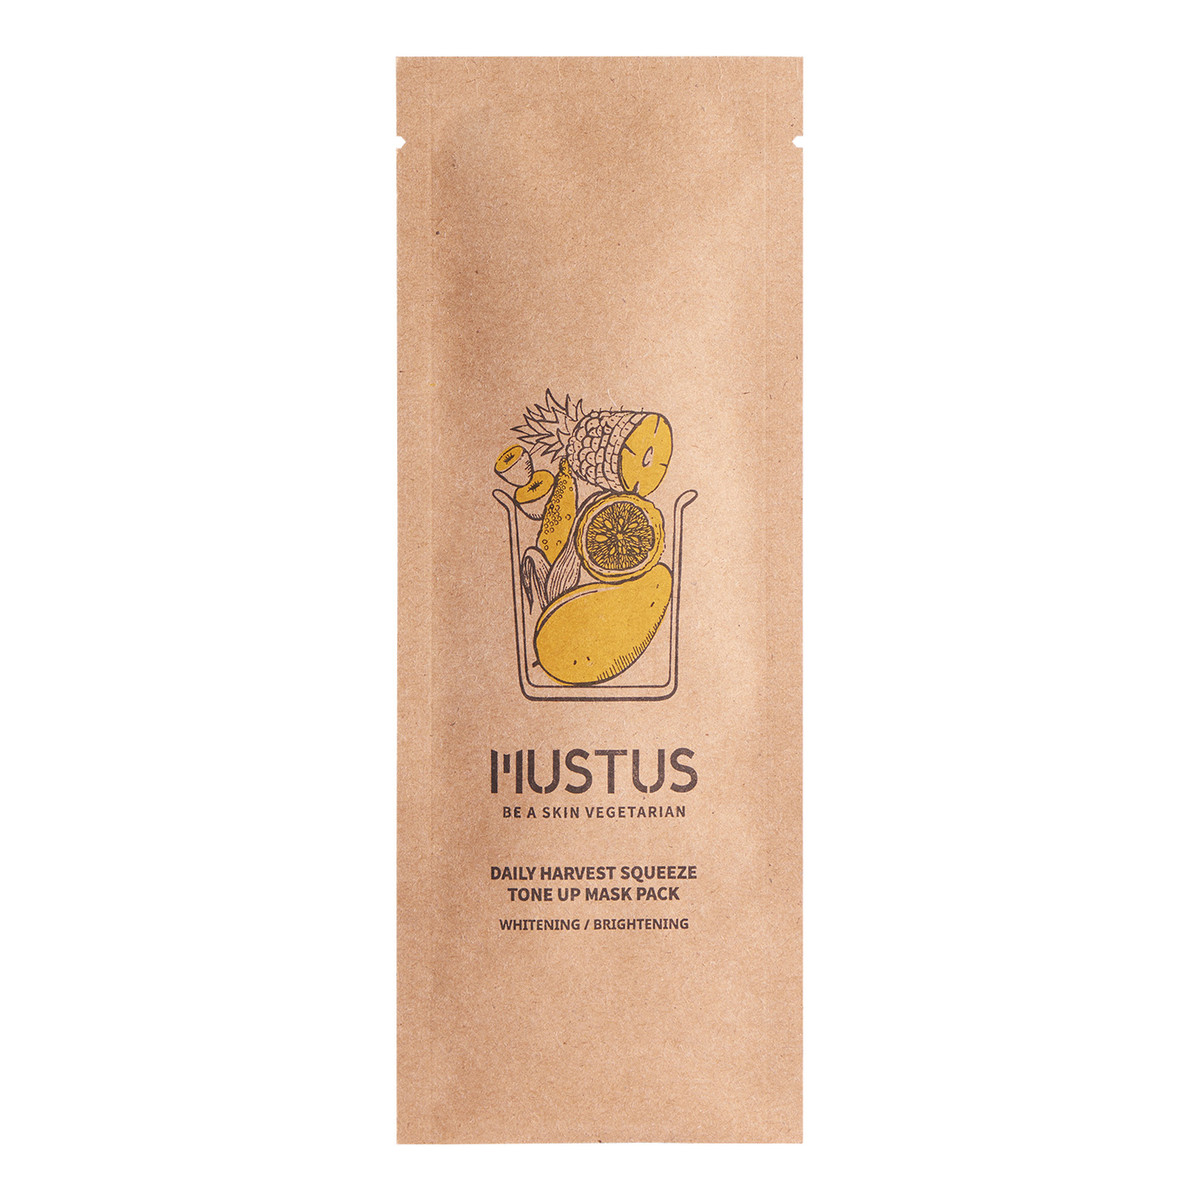 Mustus BE A SKIN VEGETARIAN! Daily Harvest Squeeze Tone Up Maseczka w płachcie rozjaśniająca stworzona na bazie kompleksu ekstraktów z żółtych warzyw i owoców 20g